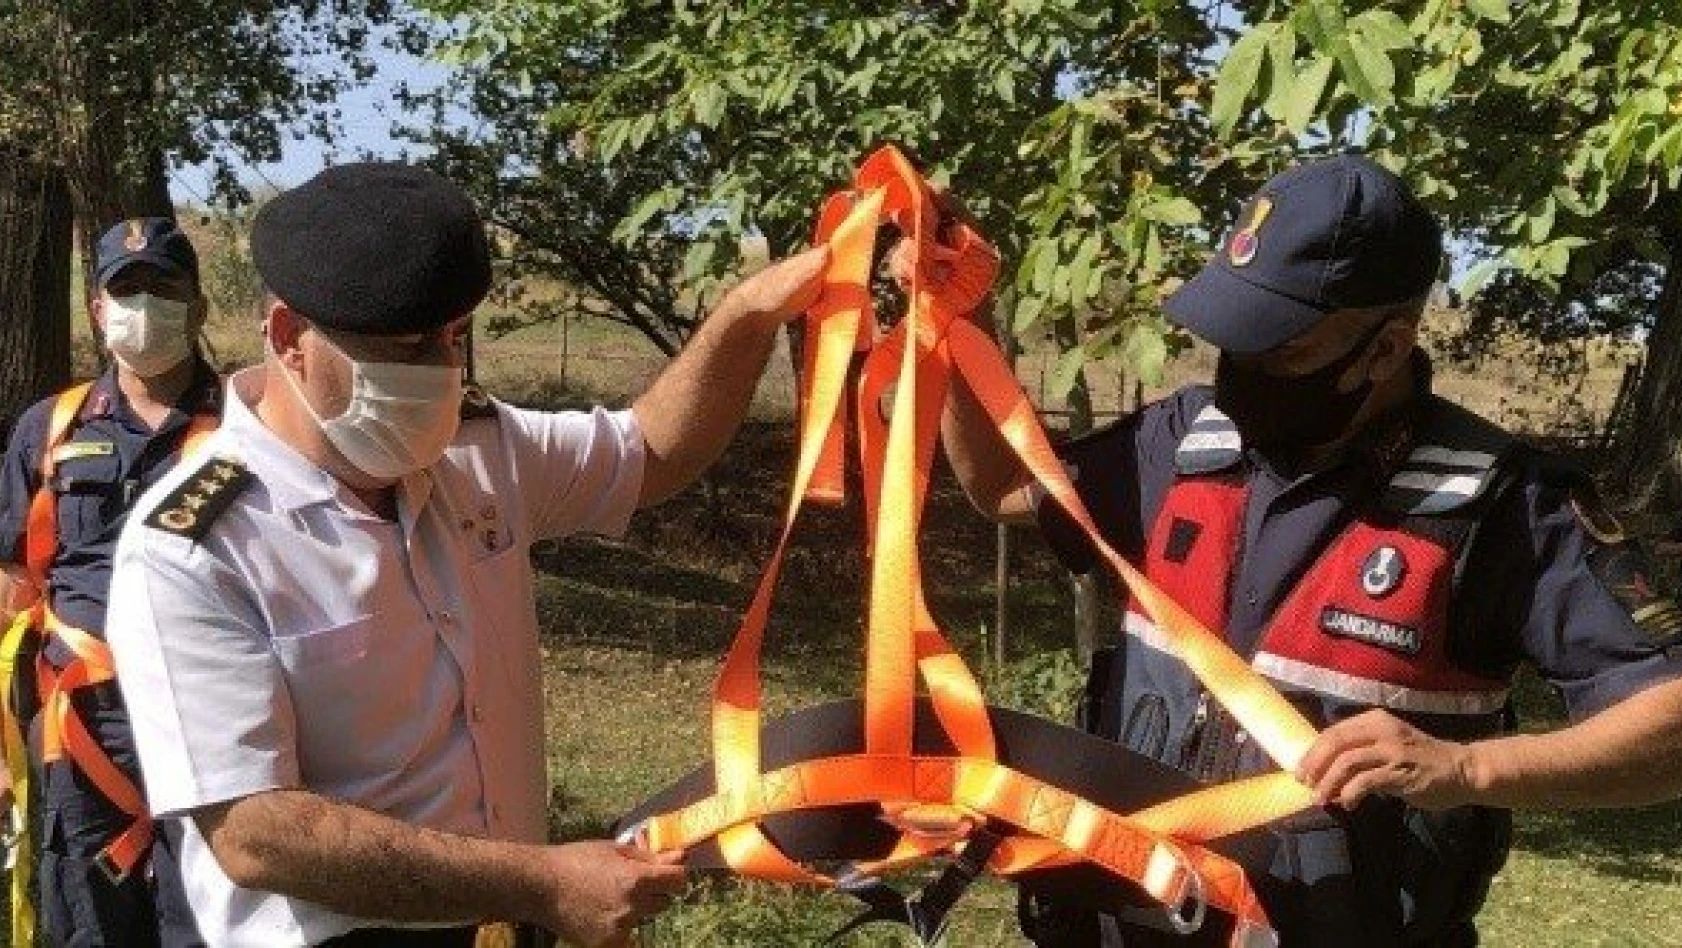 3 yılda 20 kişi ağaçtan düştü! Jandarma önlem projesi geliştirdi